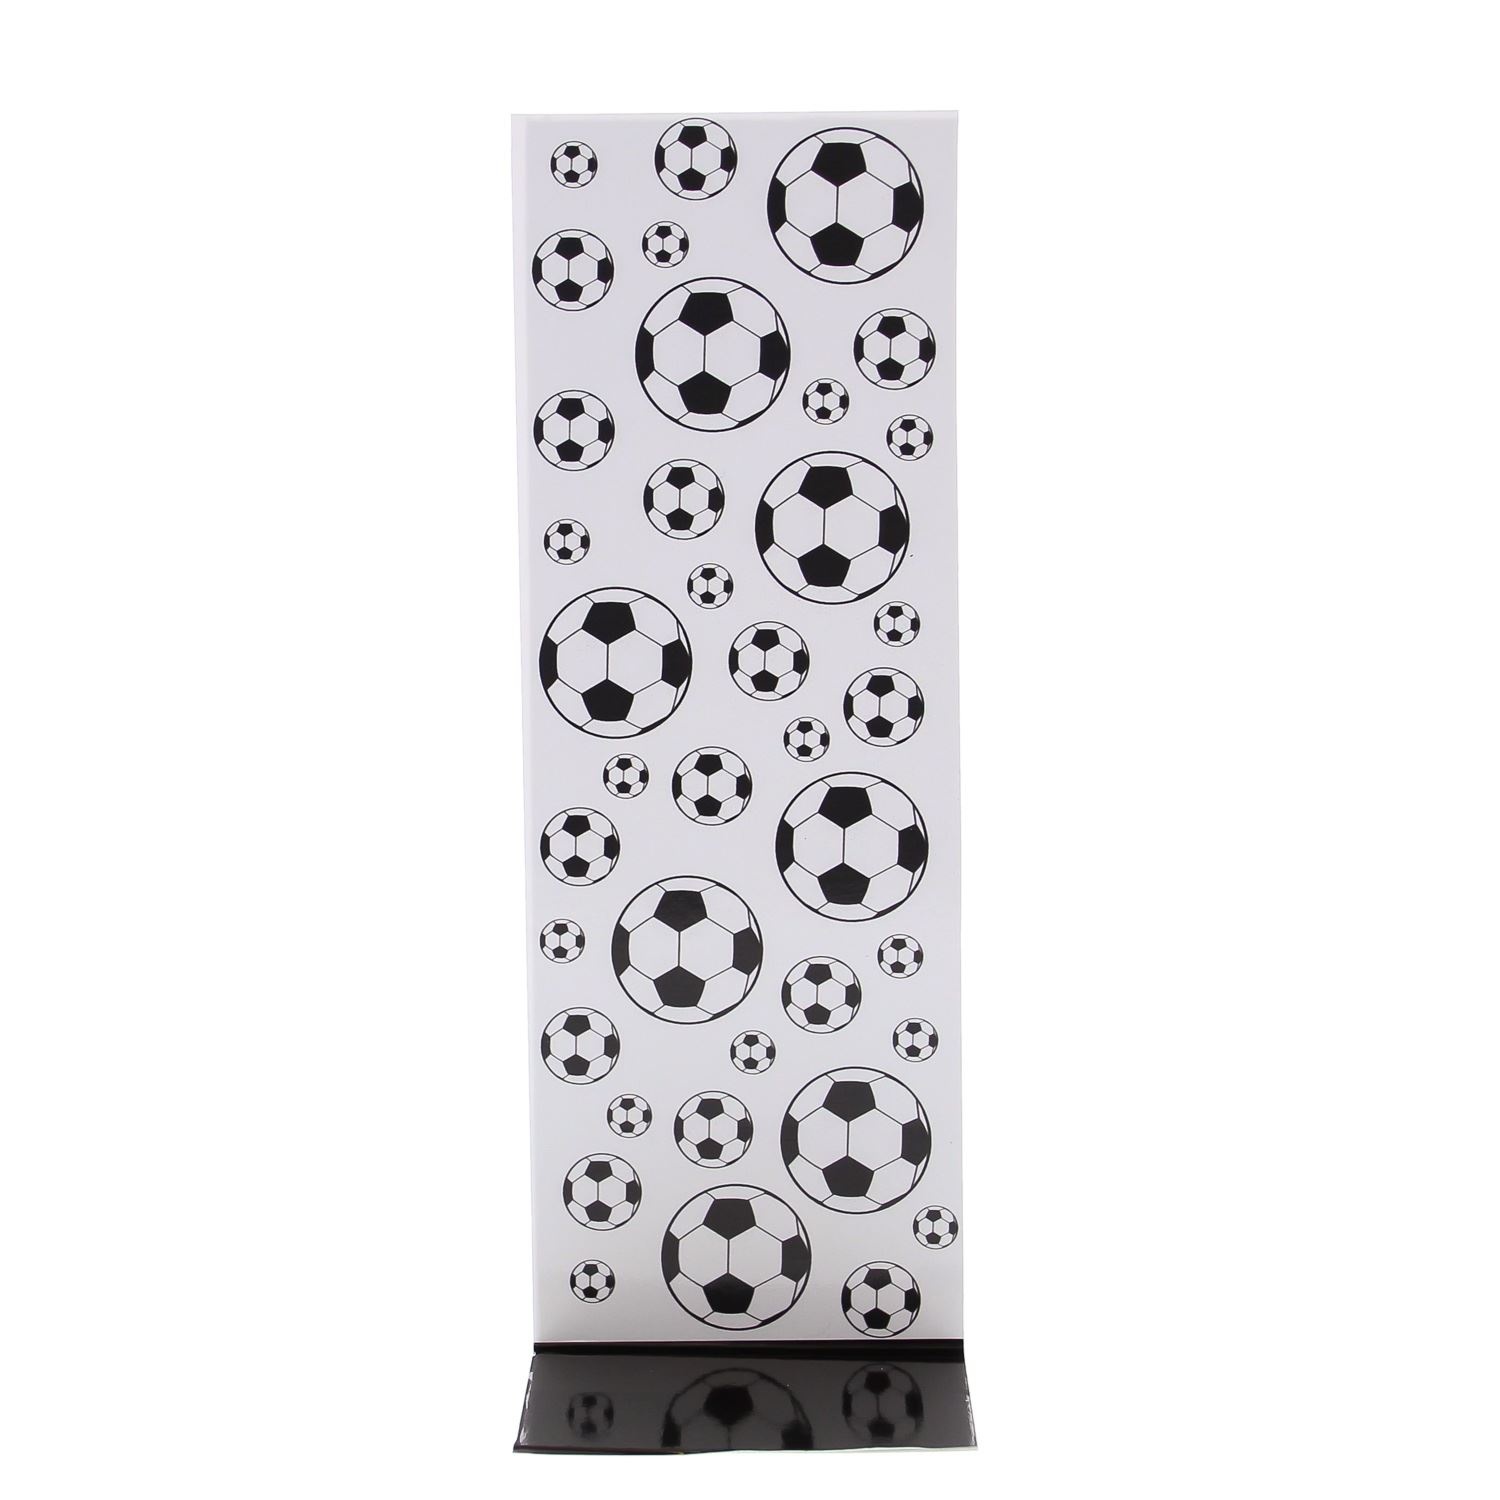 J-cardboard "Black & white" football - 77*215*50 mm - 50 stuks